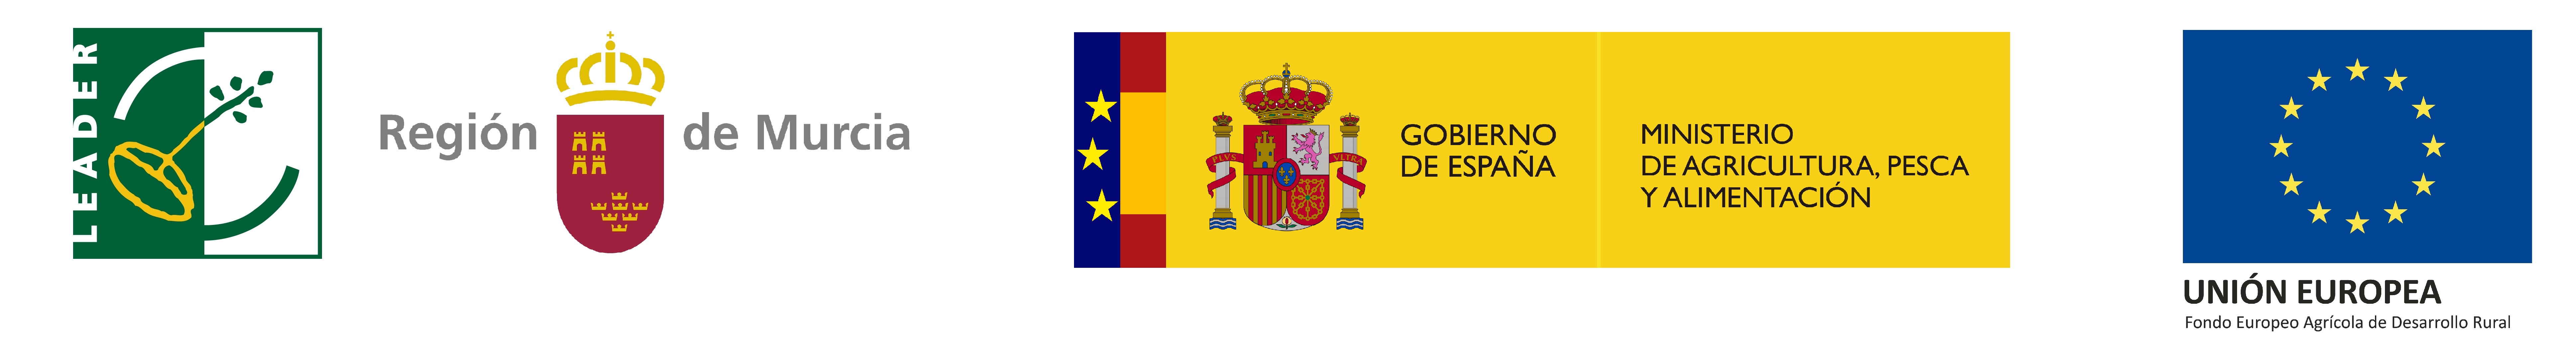 Logotipo Logotipo Leader-Región de Murcia-Ministerio de Agricultura, Pesca y Alimentación-Unión Europea No Web